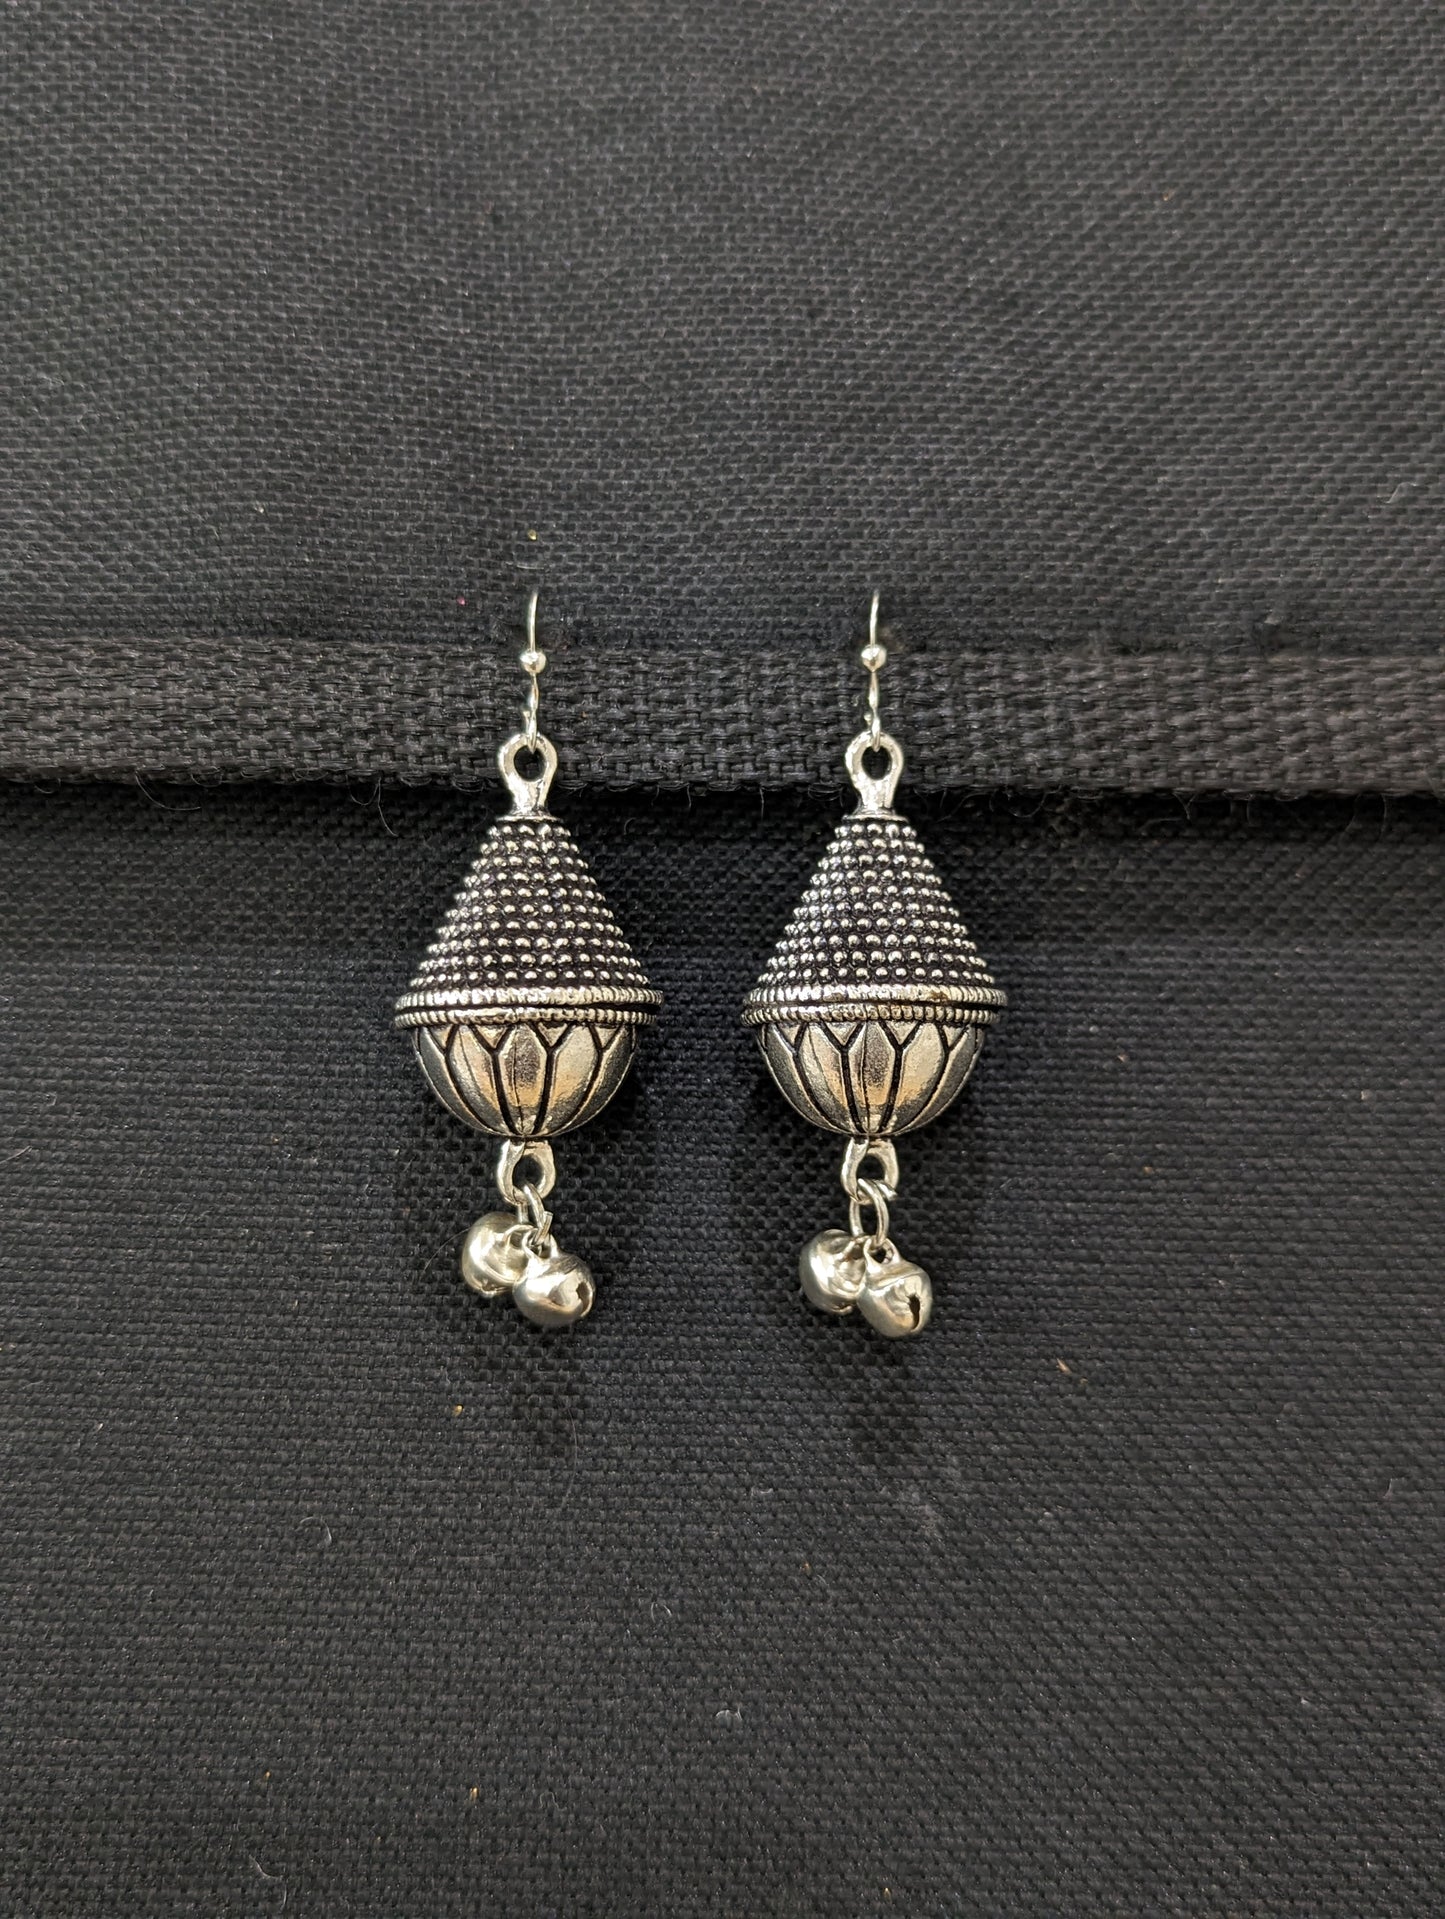 Oxidized silver cone Earrings